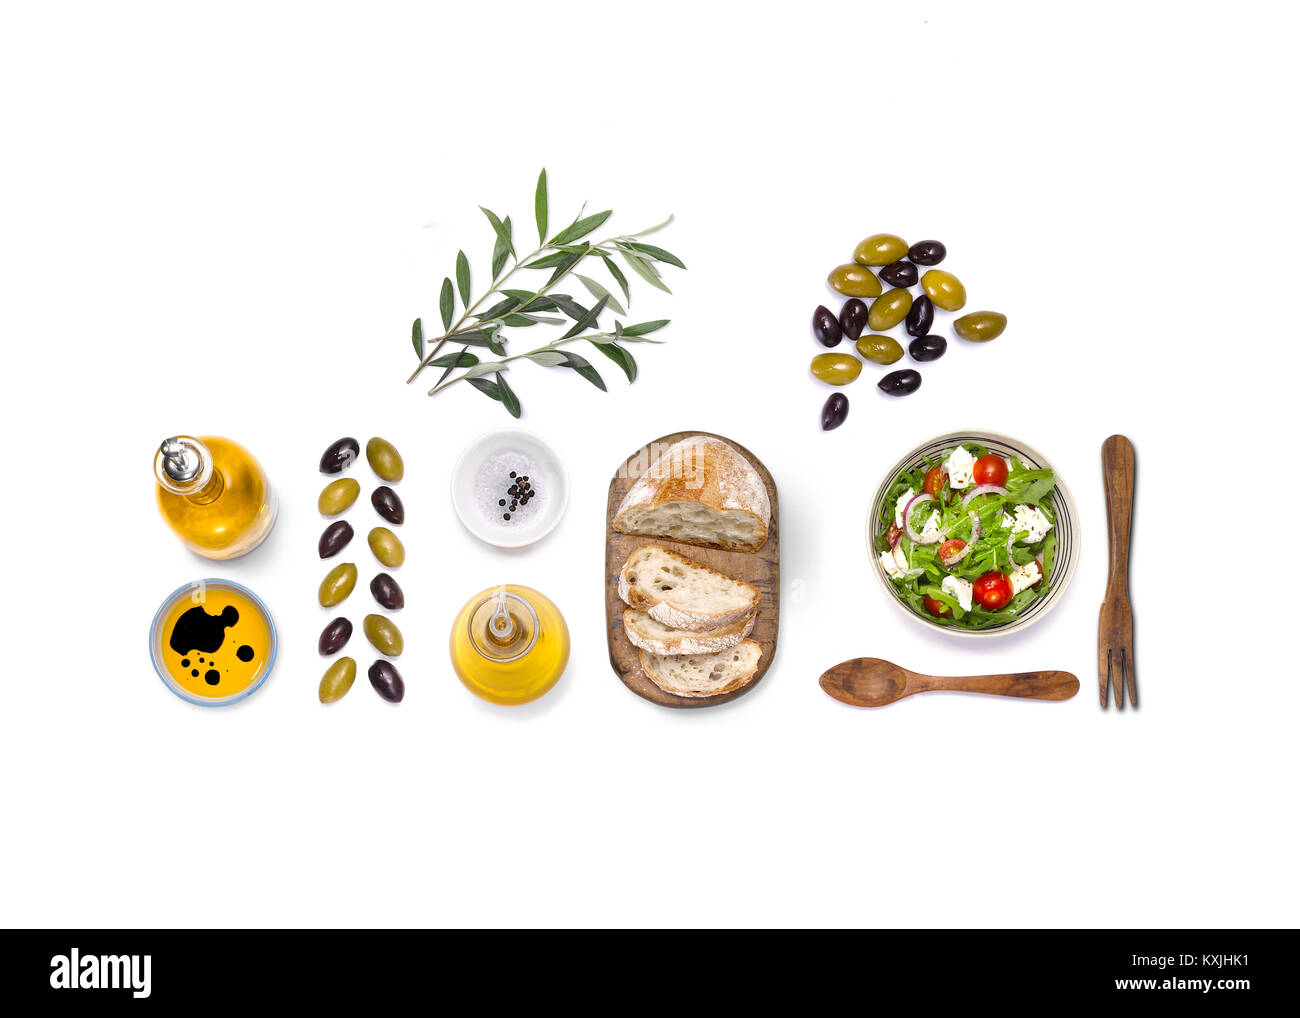 Un overhead shot di una selezione di cibi mediterranei, come ad esempio pomodori, olive, olio d'oliva e basilico e pane Foto Stock